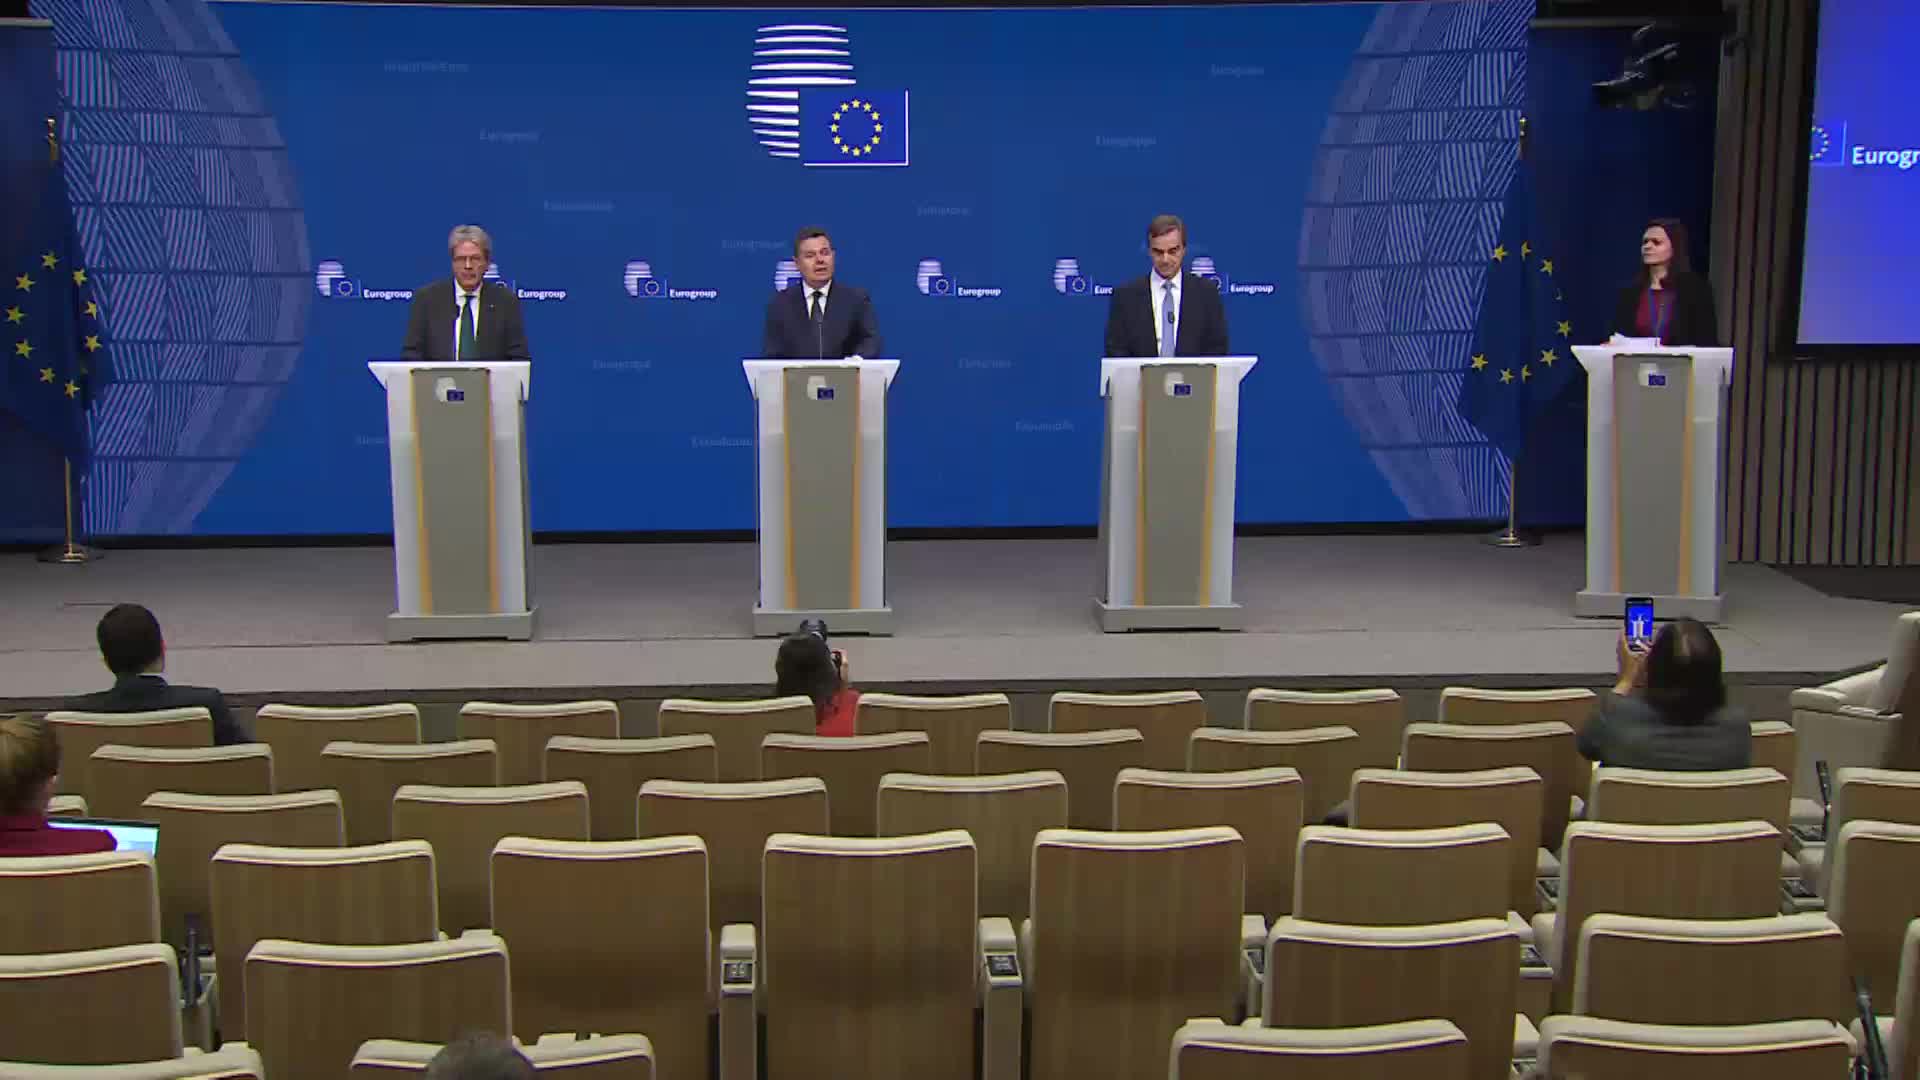 Eurogruppo – Concilium